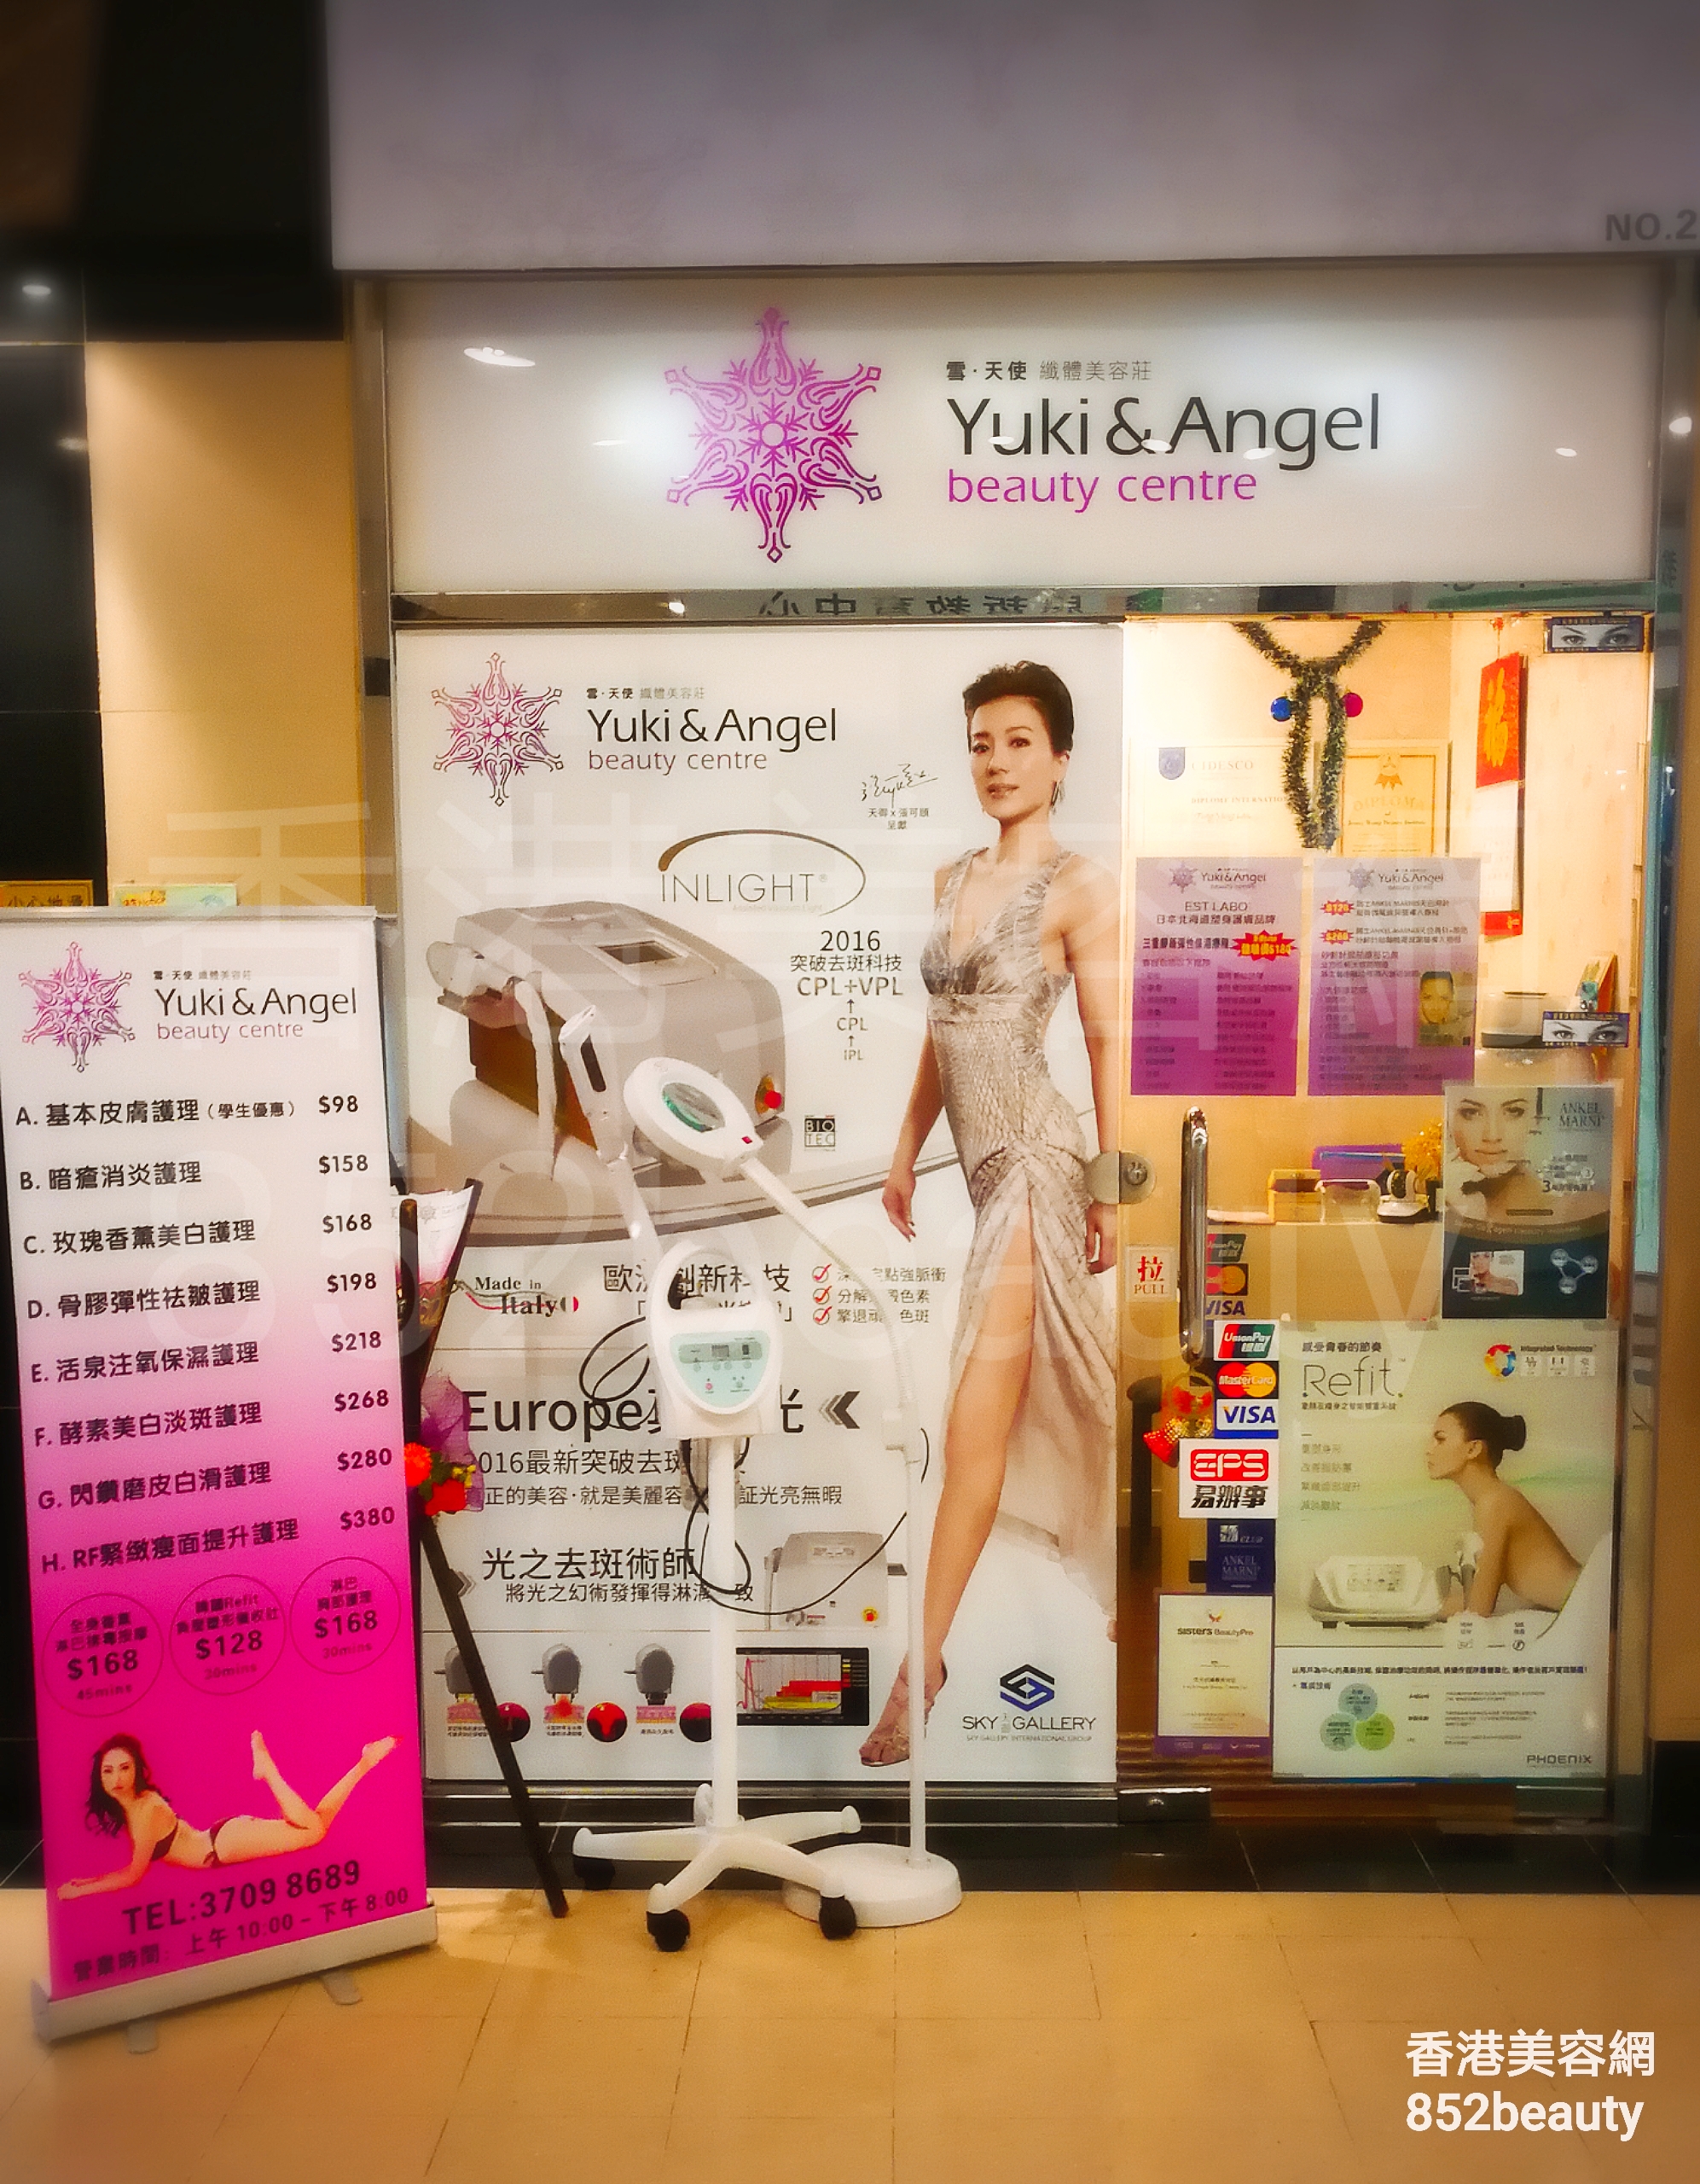 Facial Care: Yuki & Angel beauty centre